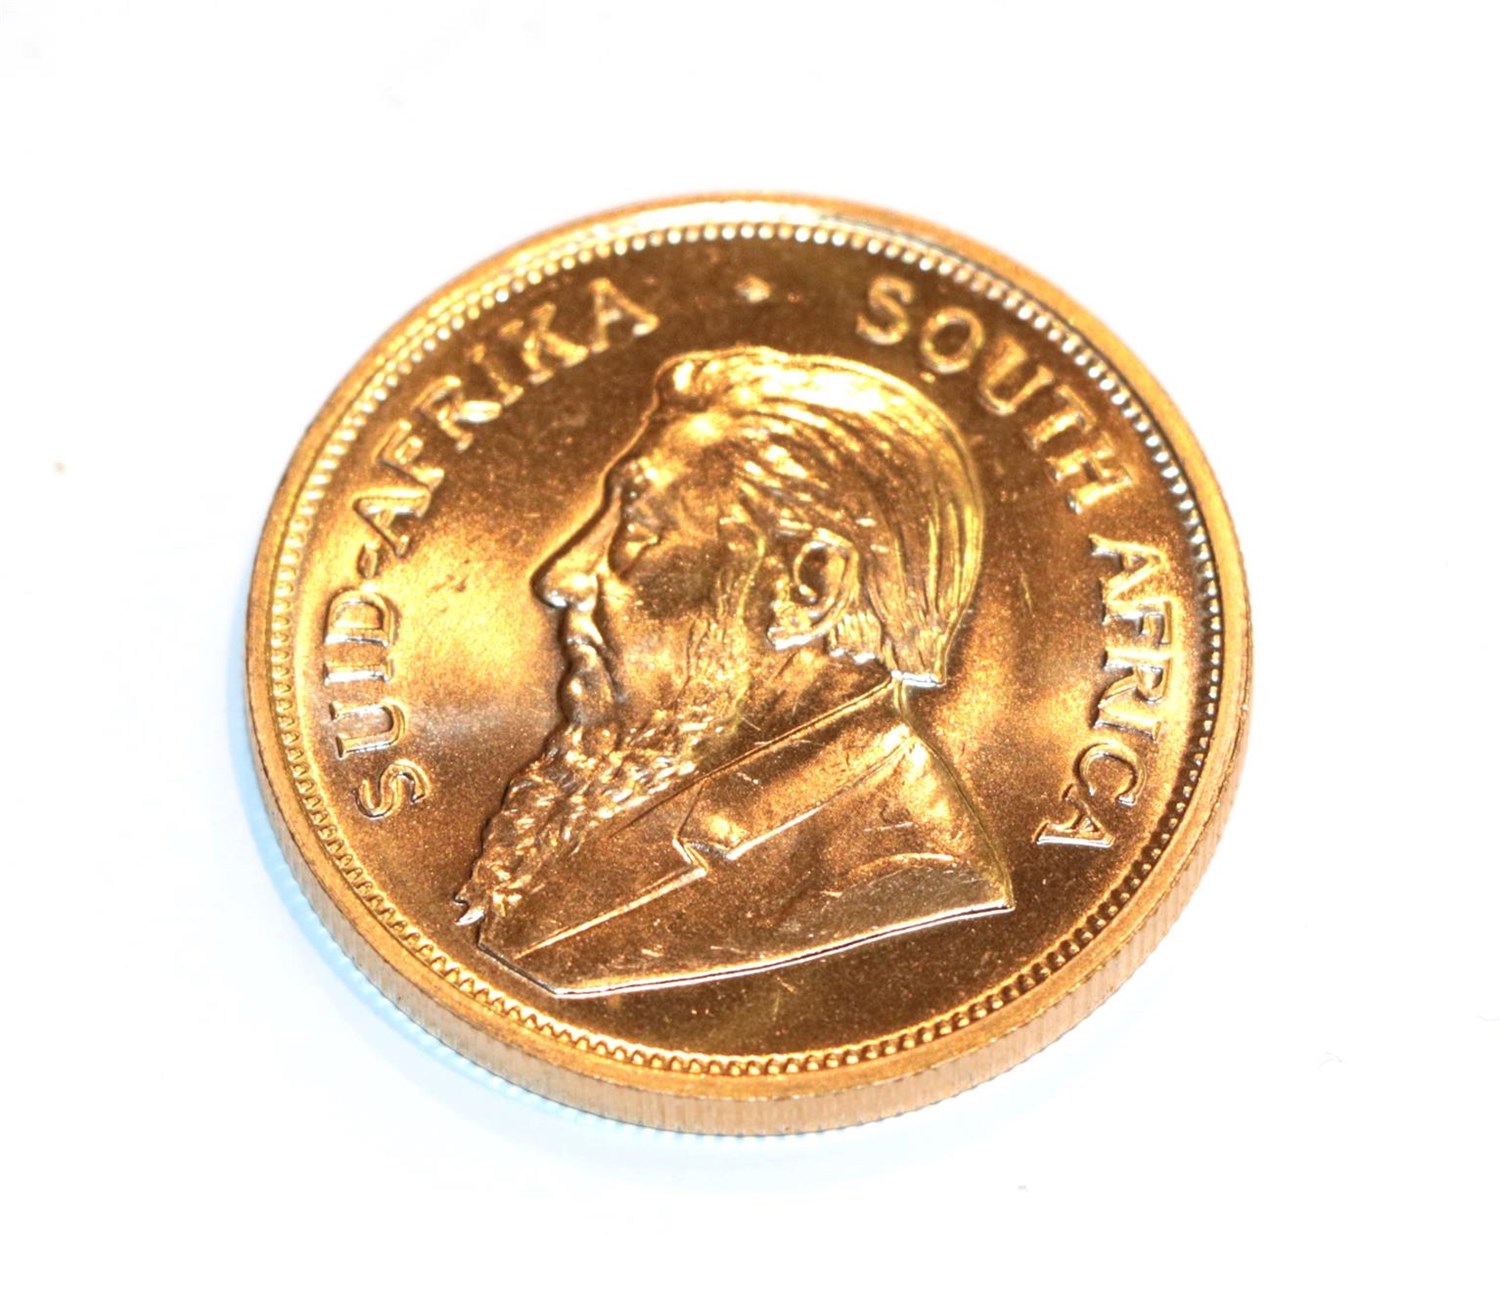 Lot 113 - South Africa, 1974 Krugerrand. 1 oz. fine gold (.999). Obv: Bust of Paul Kruger left. Rev:...